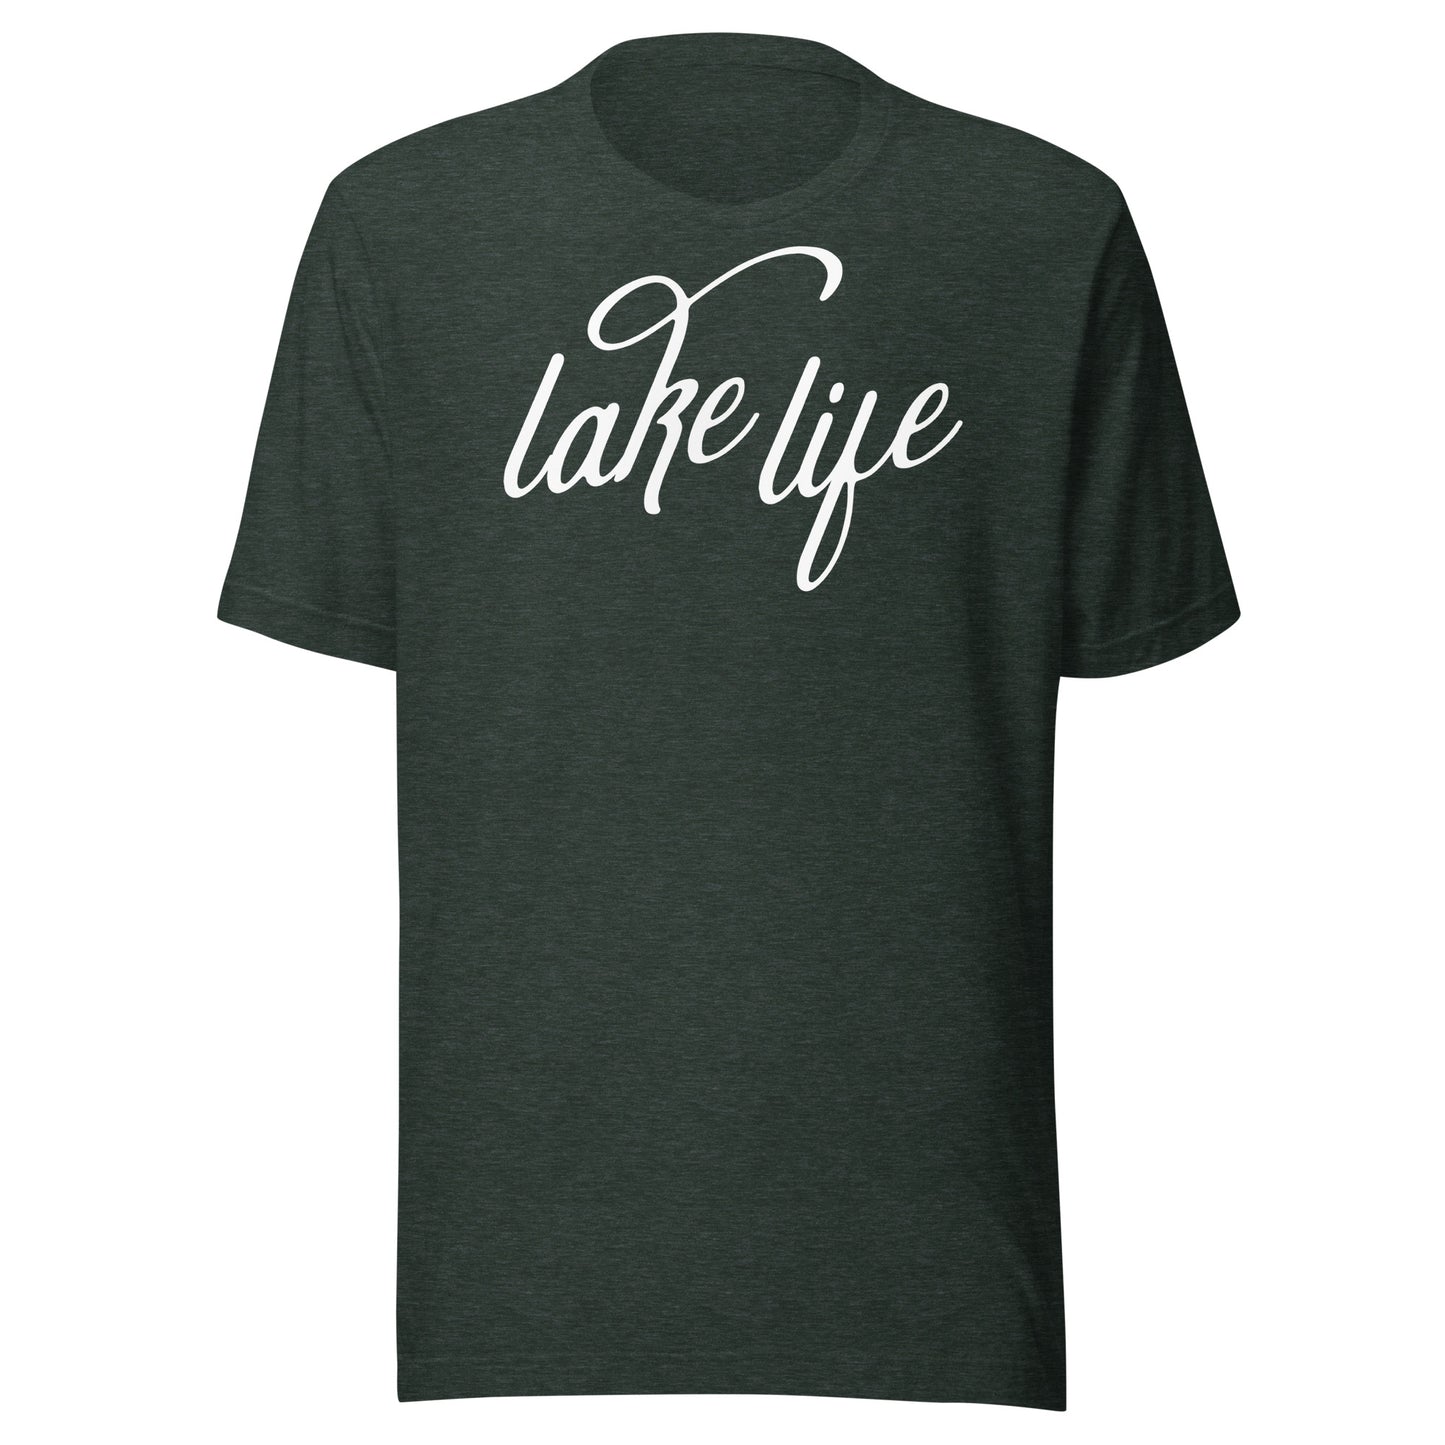 Green Lake Life Tshirt